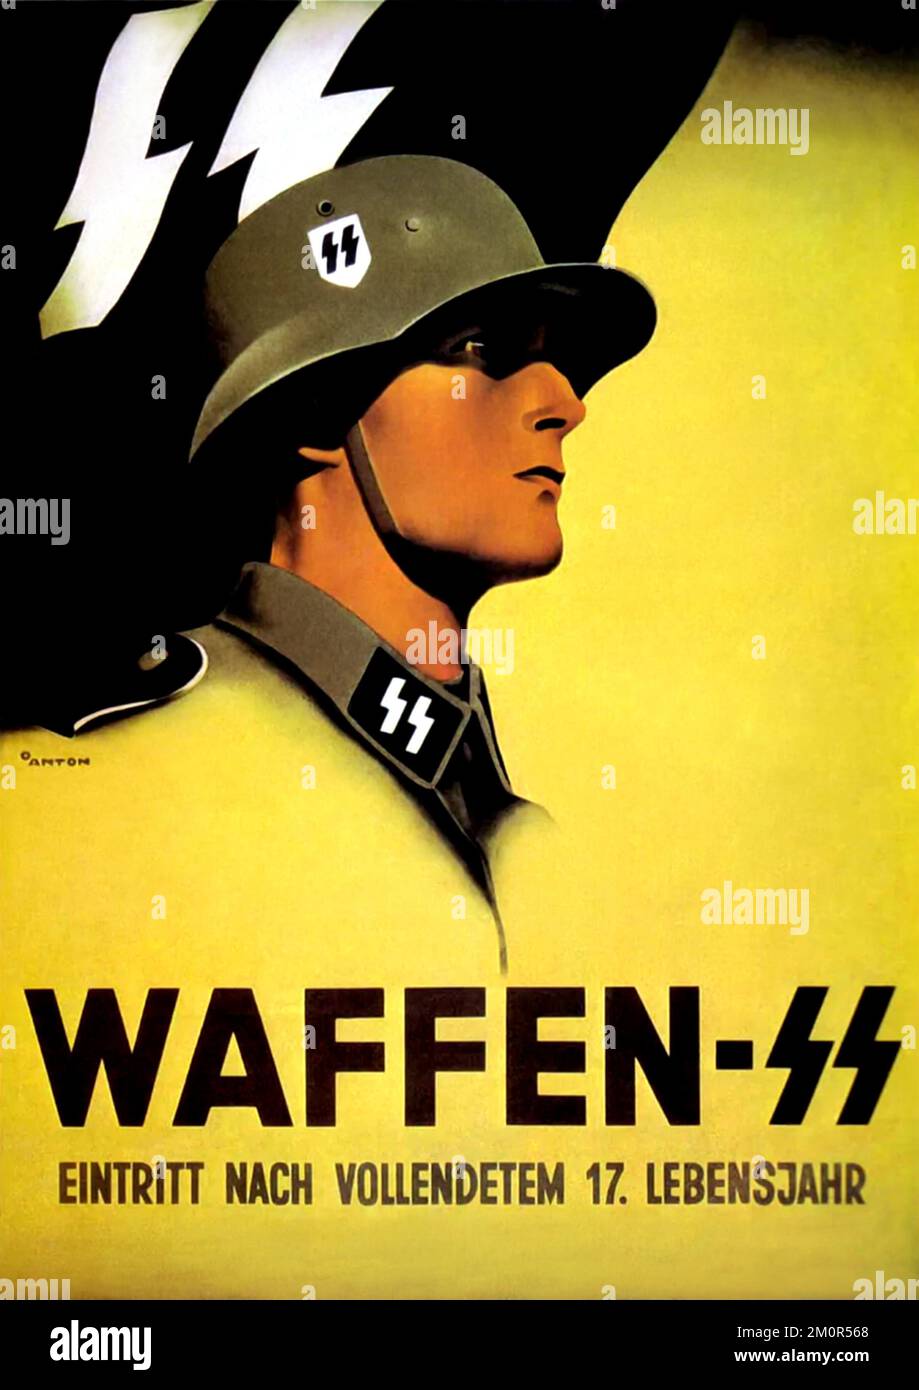 1935 ca, GERMANIA : il dittatore tedesco di Fuhrer ADOLF HITLER ( 1889 - 1945 ), capo del terzo Reich . Manifesto propaganda per l'arruolamento militare NAZISTA in WAFFEN SS Schutzstaffel ( Eintritt Nach Vollendetem 17 . Lebensjahr - trad: Entrata dopo la svolta 17 . età ). L'organizzazione nazionalsocialista, il più importante portatore di terrore e la politica di sterminio dello stato nazionalsocialista fu la SS . Progettato dall'illustratore ANTON . - SECONDA GUERRA MONDIALE - NAZISTA - NAZISTA - NAZISTA - NAZISTA - NAZISMO - SECONDA GUERRA MONDIALE - WW2 - GUERRA MONDIALE II - DITATORE - POLITICA - POLITICO - PROFILO - PROF Foto Stock